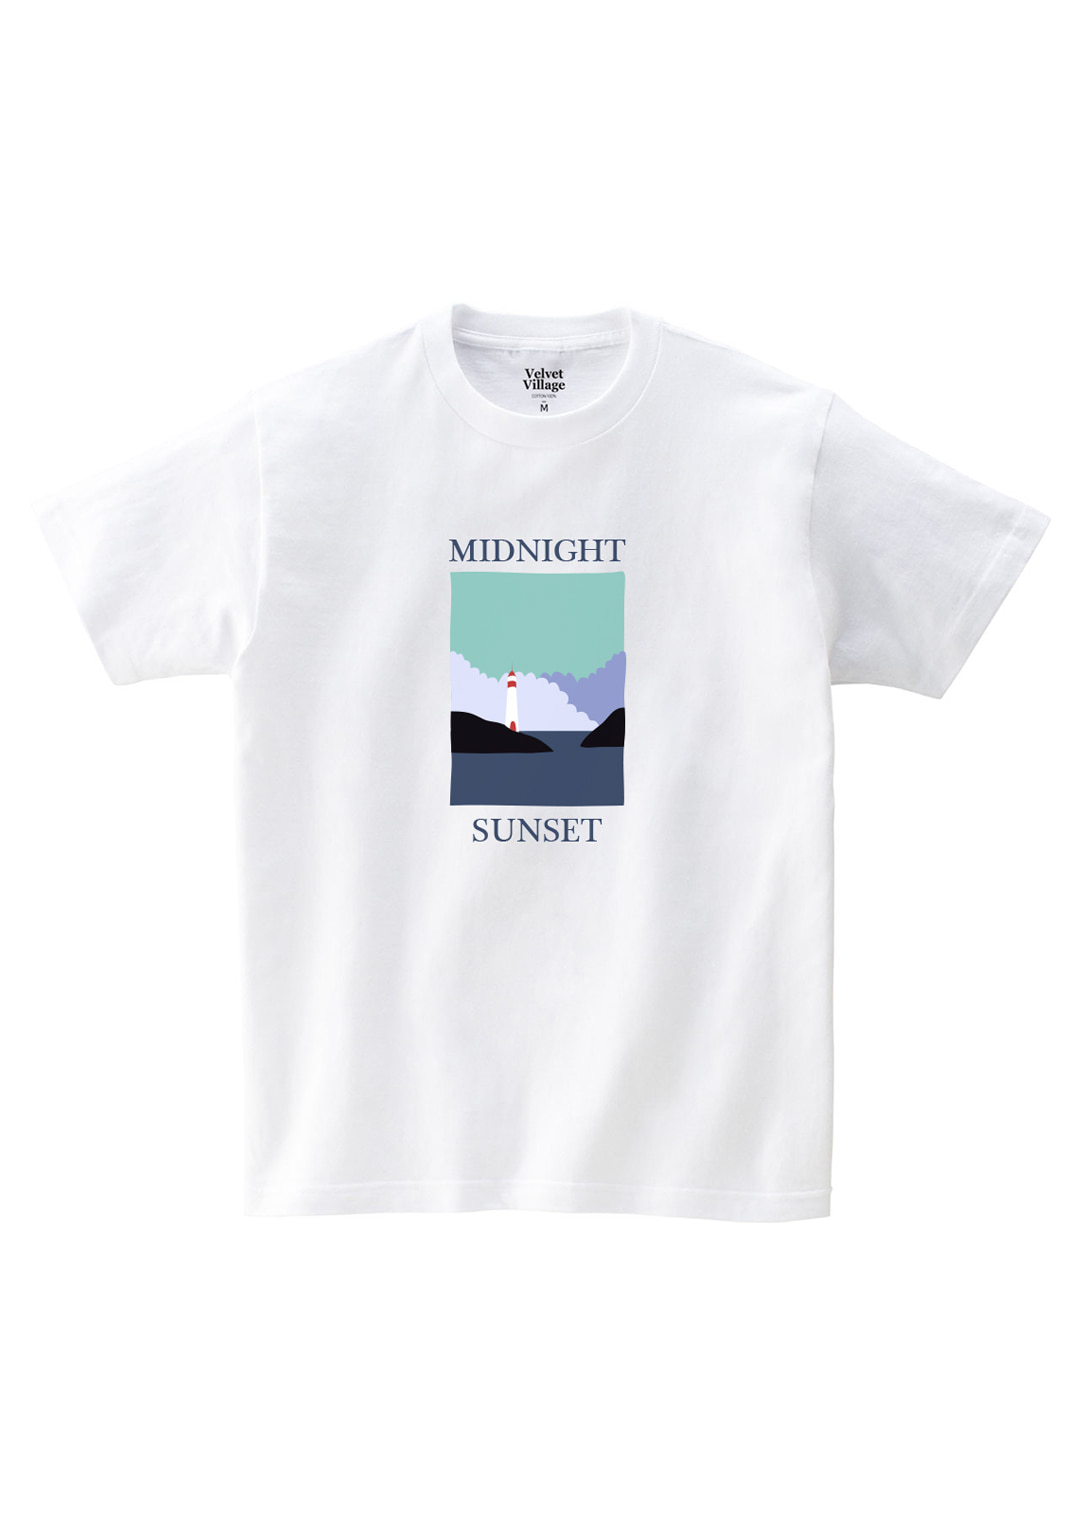 MIdnight T-shirts (White)